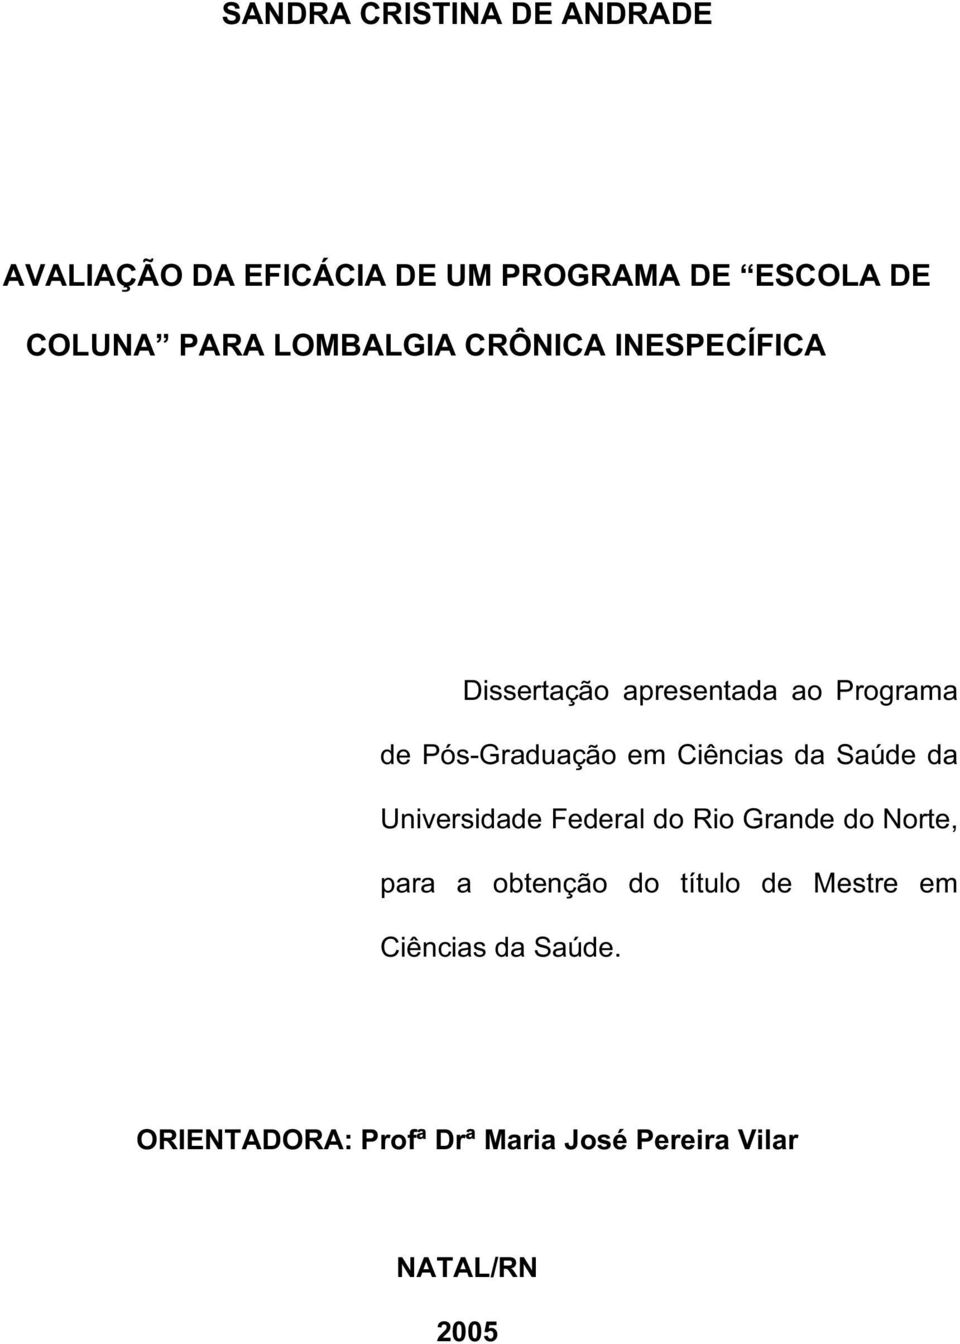 Ciências da Saúde da Universidade Federal do Rio Grande do Norte, para a obtenção do